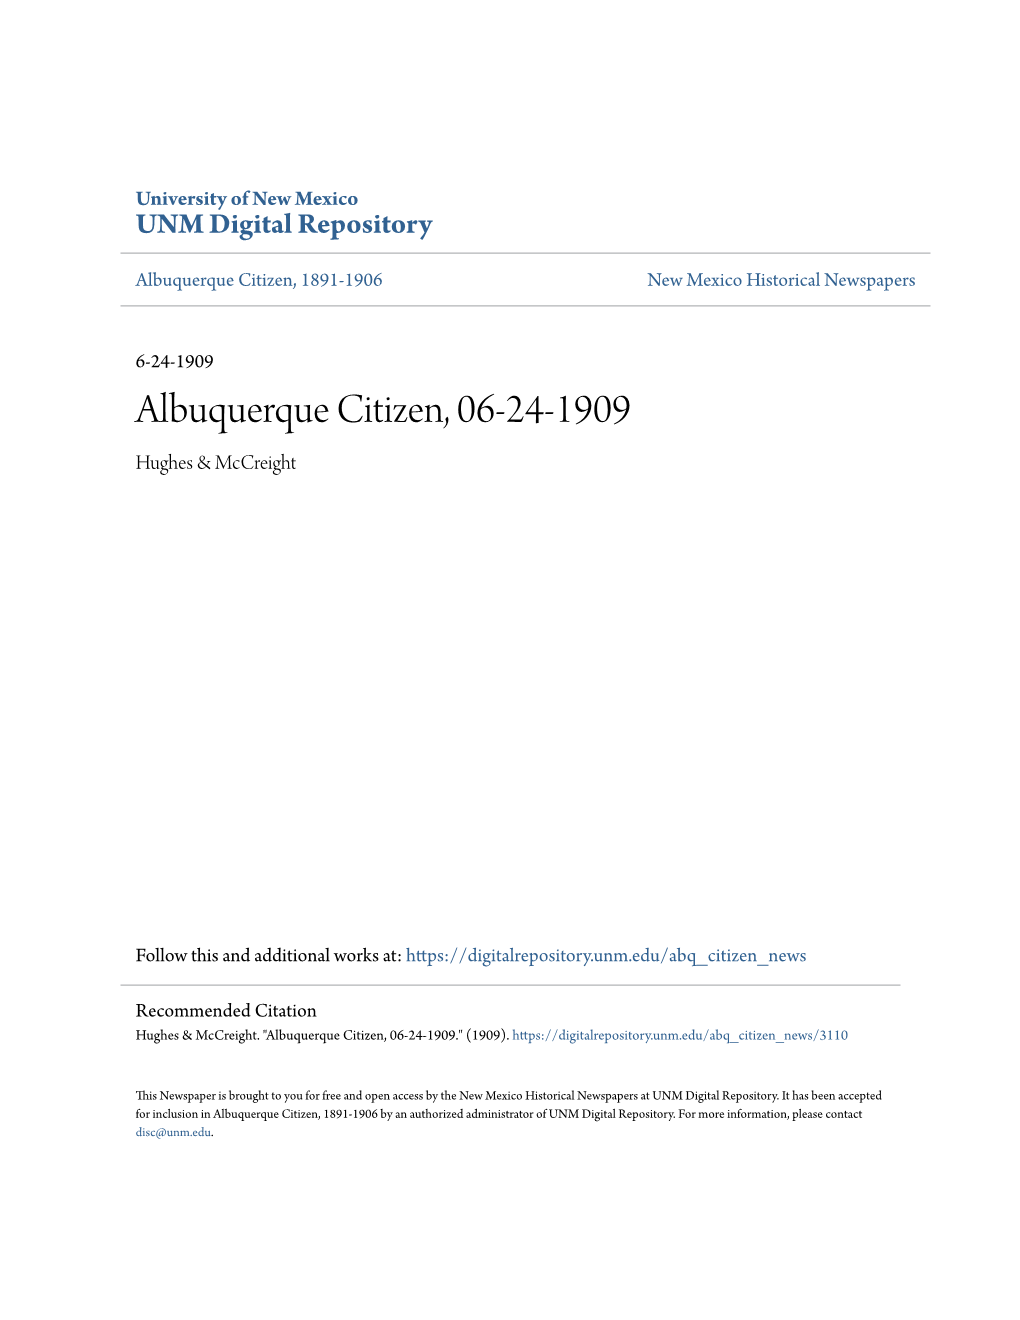 Albuquerque Citizen, 06-24-1909 Hughes & Mccreight